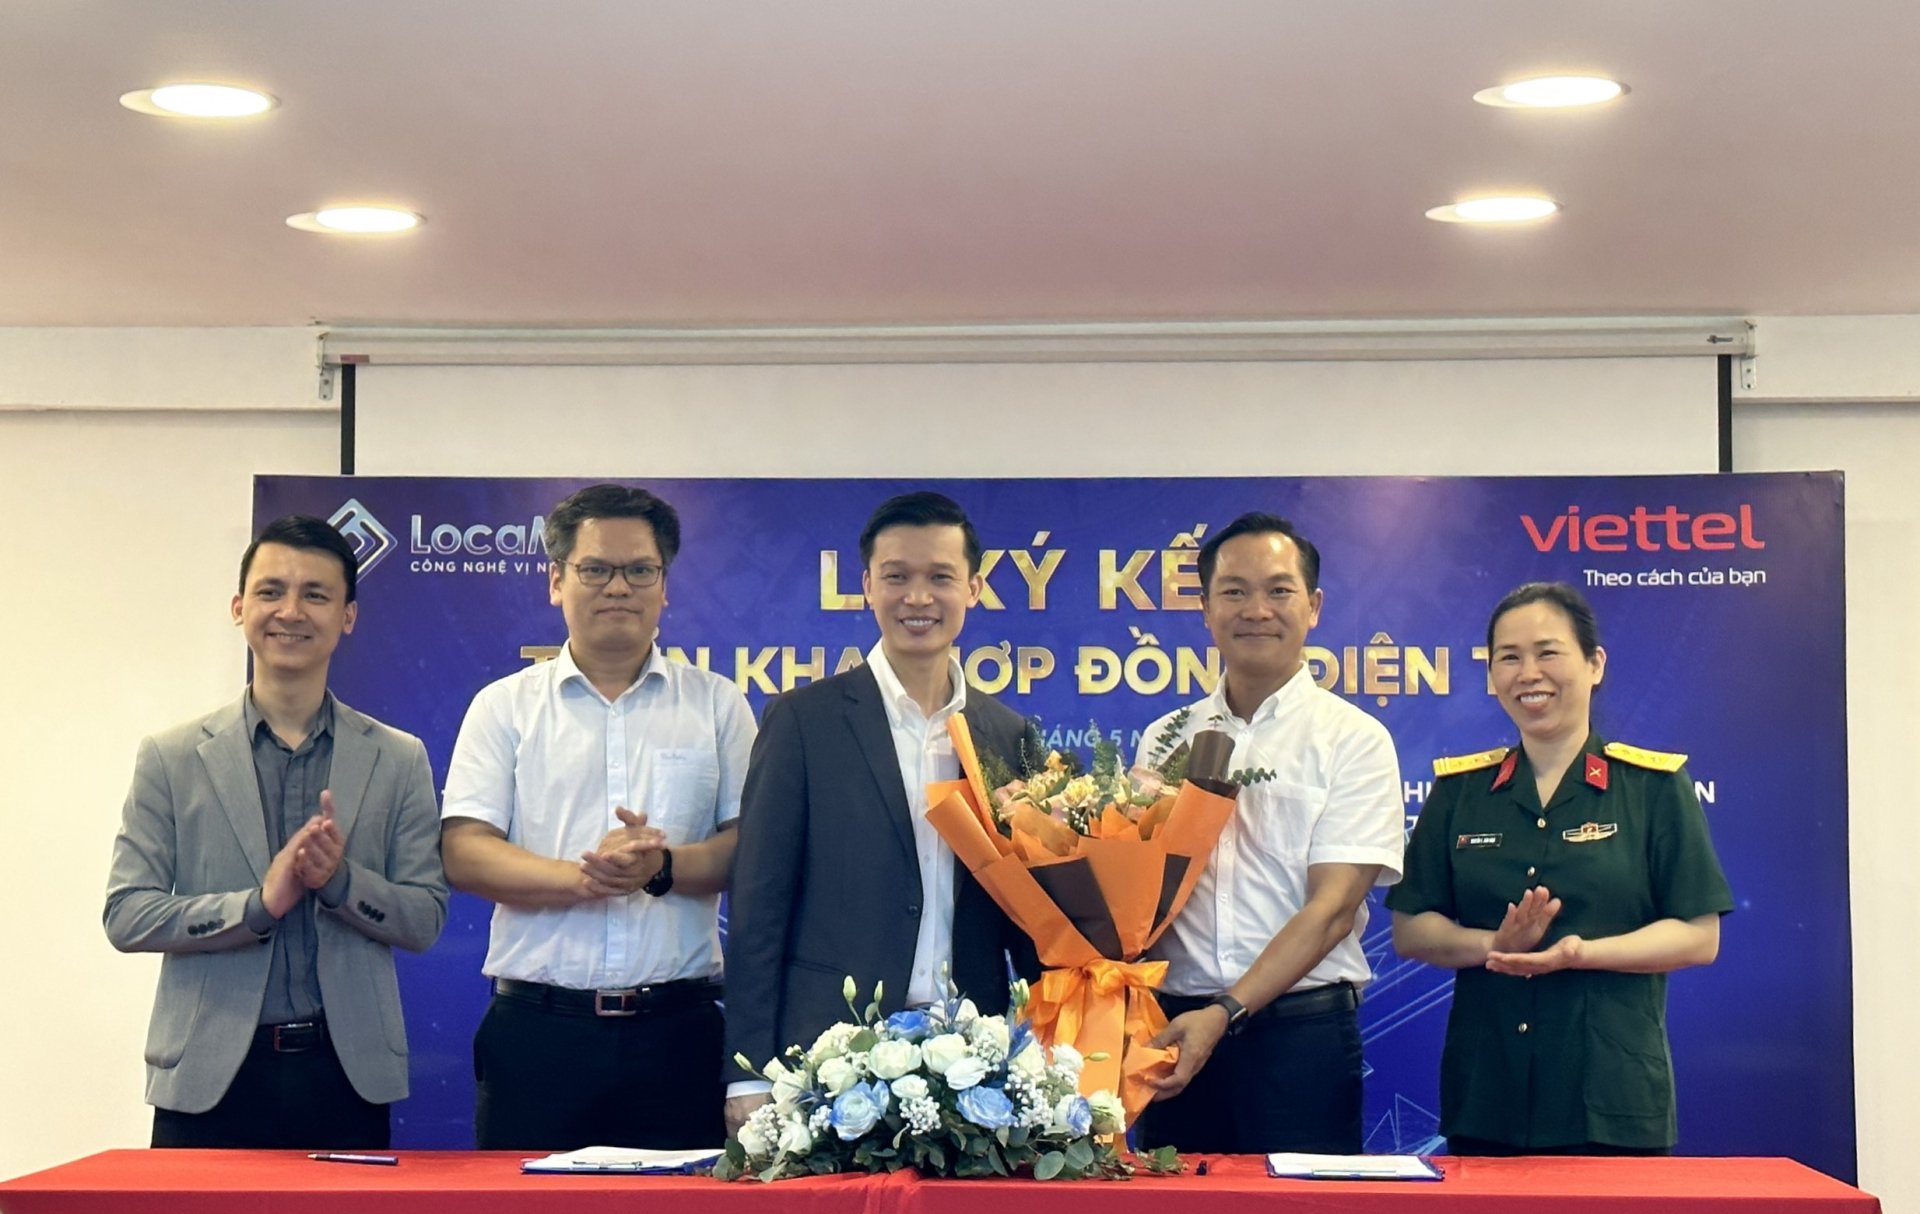 Nâng cao chuyển đổi số doanh nghiệp: LocaMos và Viettel Hà Nội hợp tác triển khai Hợp đồng Điện tử